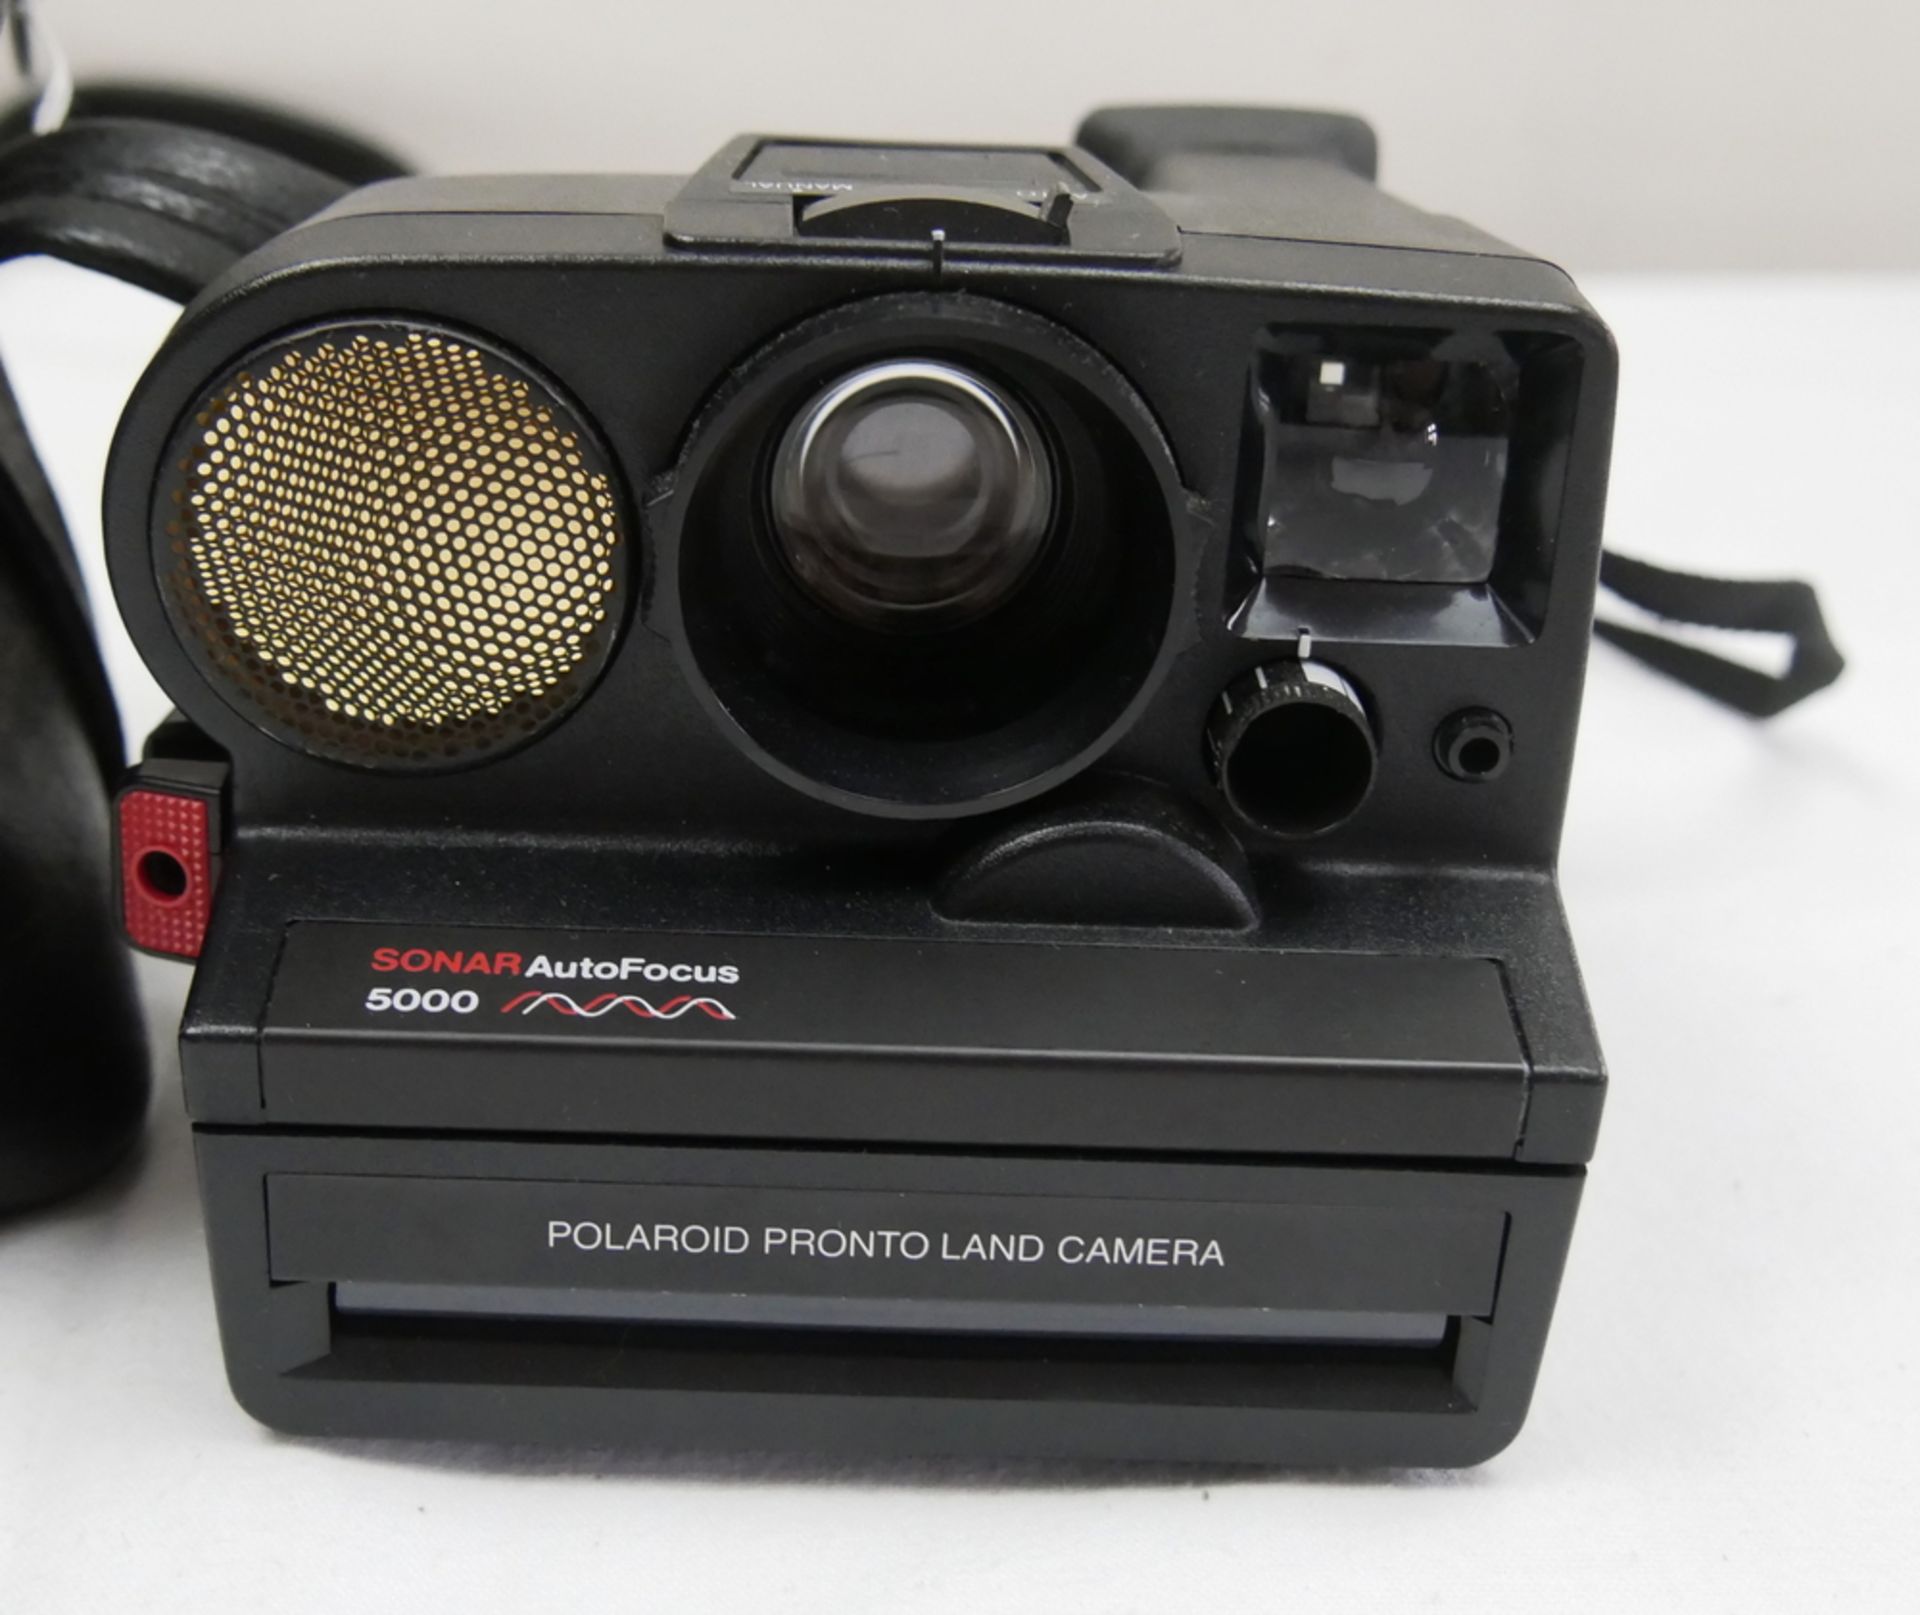 Polaroid Prontoland Camera, Sonar Auto Focus 5000. In Tasche. Funktion nicht geprüft. - Bild 2 aus 2